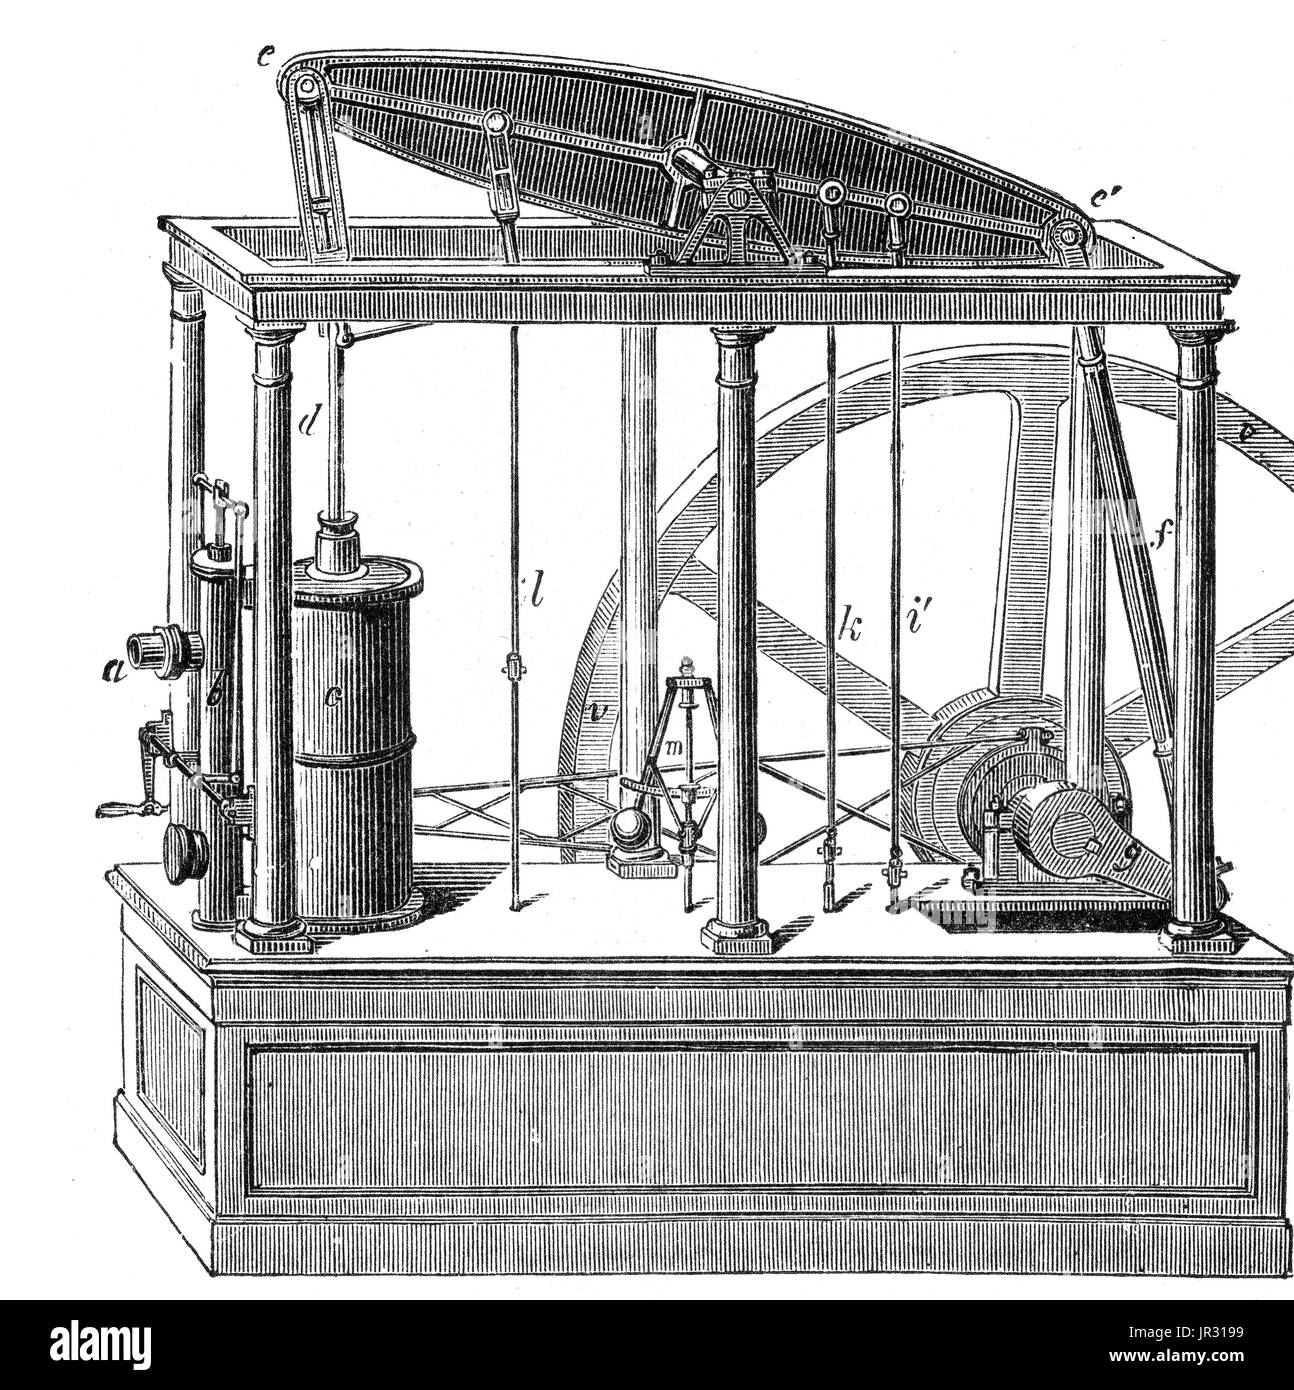 Il Watt motore a vapore è stato il primo tipo di motore a vapore per fare uso di vapore ad una pressione di poco al di sopra della pressione atmosferica, per guidare il pistone è aiutato da un vuoto parziale. Migliorare la progettazione del 1712 Newcomen motore, il Watt motore a vapore, sviluppato sporadicamente dal 1763 al 1775, è stato il prossimo grande passo nello sviluppo del motore a vapore. Offrendo un drammatico aumento nel rendimento del carburante, il nuovo design sostituito Newcomen motori in aree dove il carbone era costosa e quindi ha continuato a essere utilizzato in luogo di più naturale delle fonti di energia come il vento e acqua. James Watt del design è diventato sinonimo Foto Stock